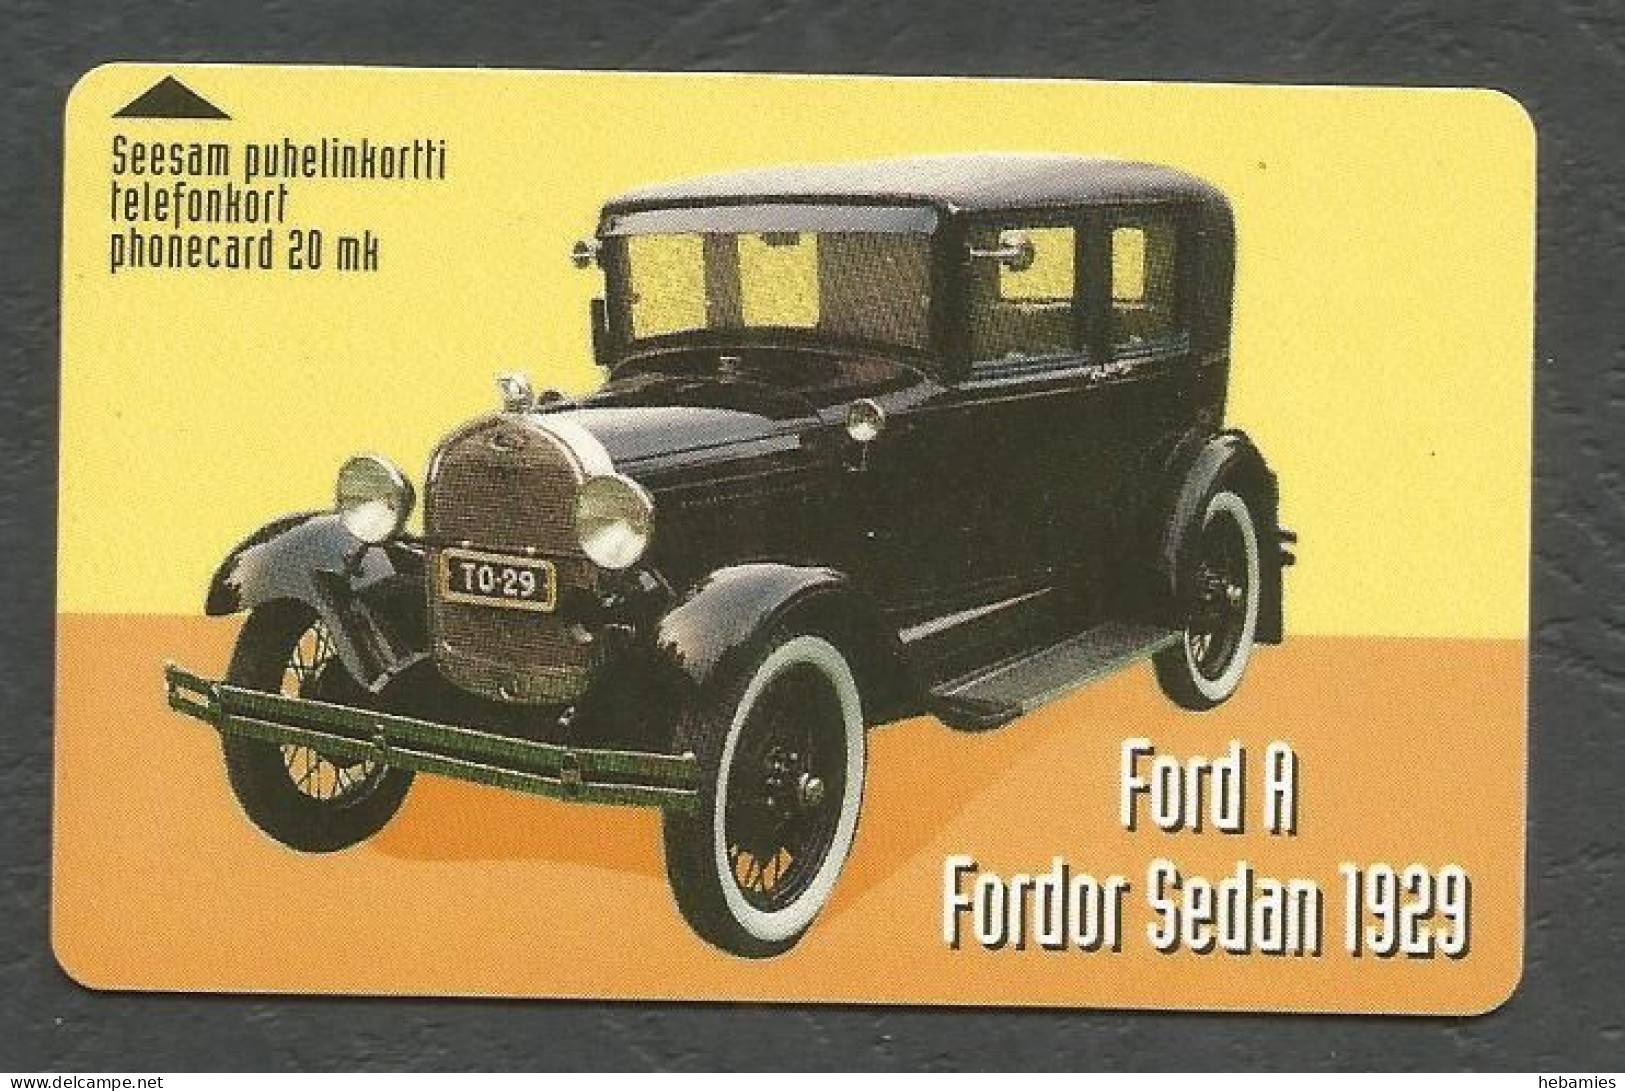 FORD  A FORDOR SEDAN 1929 - Magnetic Card -  20 FIM  FINNET - FINLAND - - Automobili